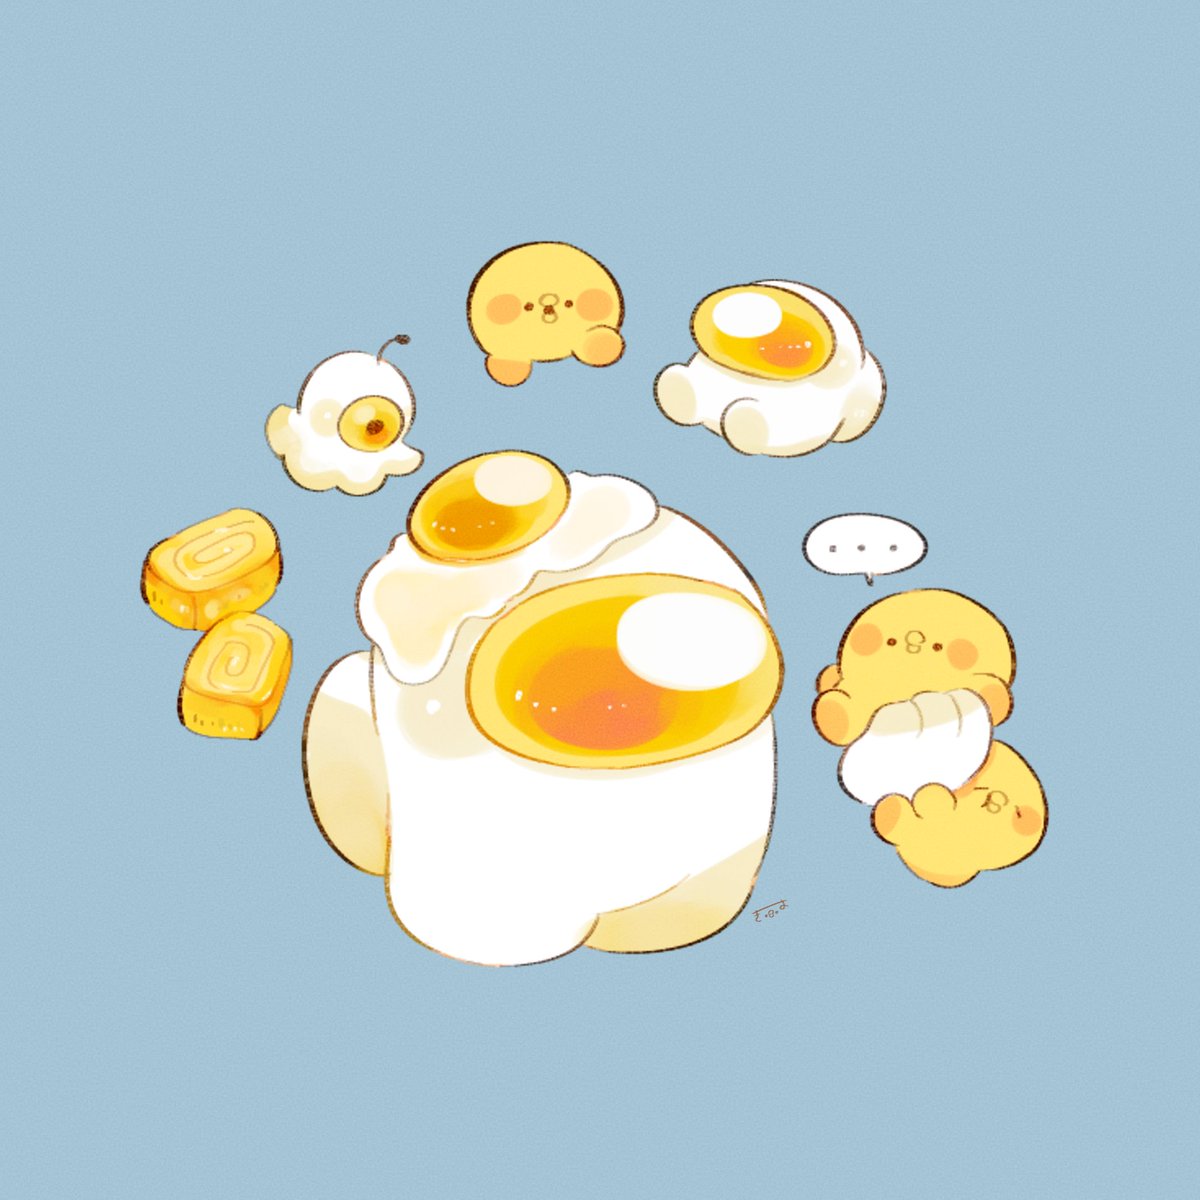 ... food egg (food) no humans spoken ellipsis simple background blue background  illustration images